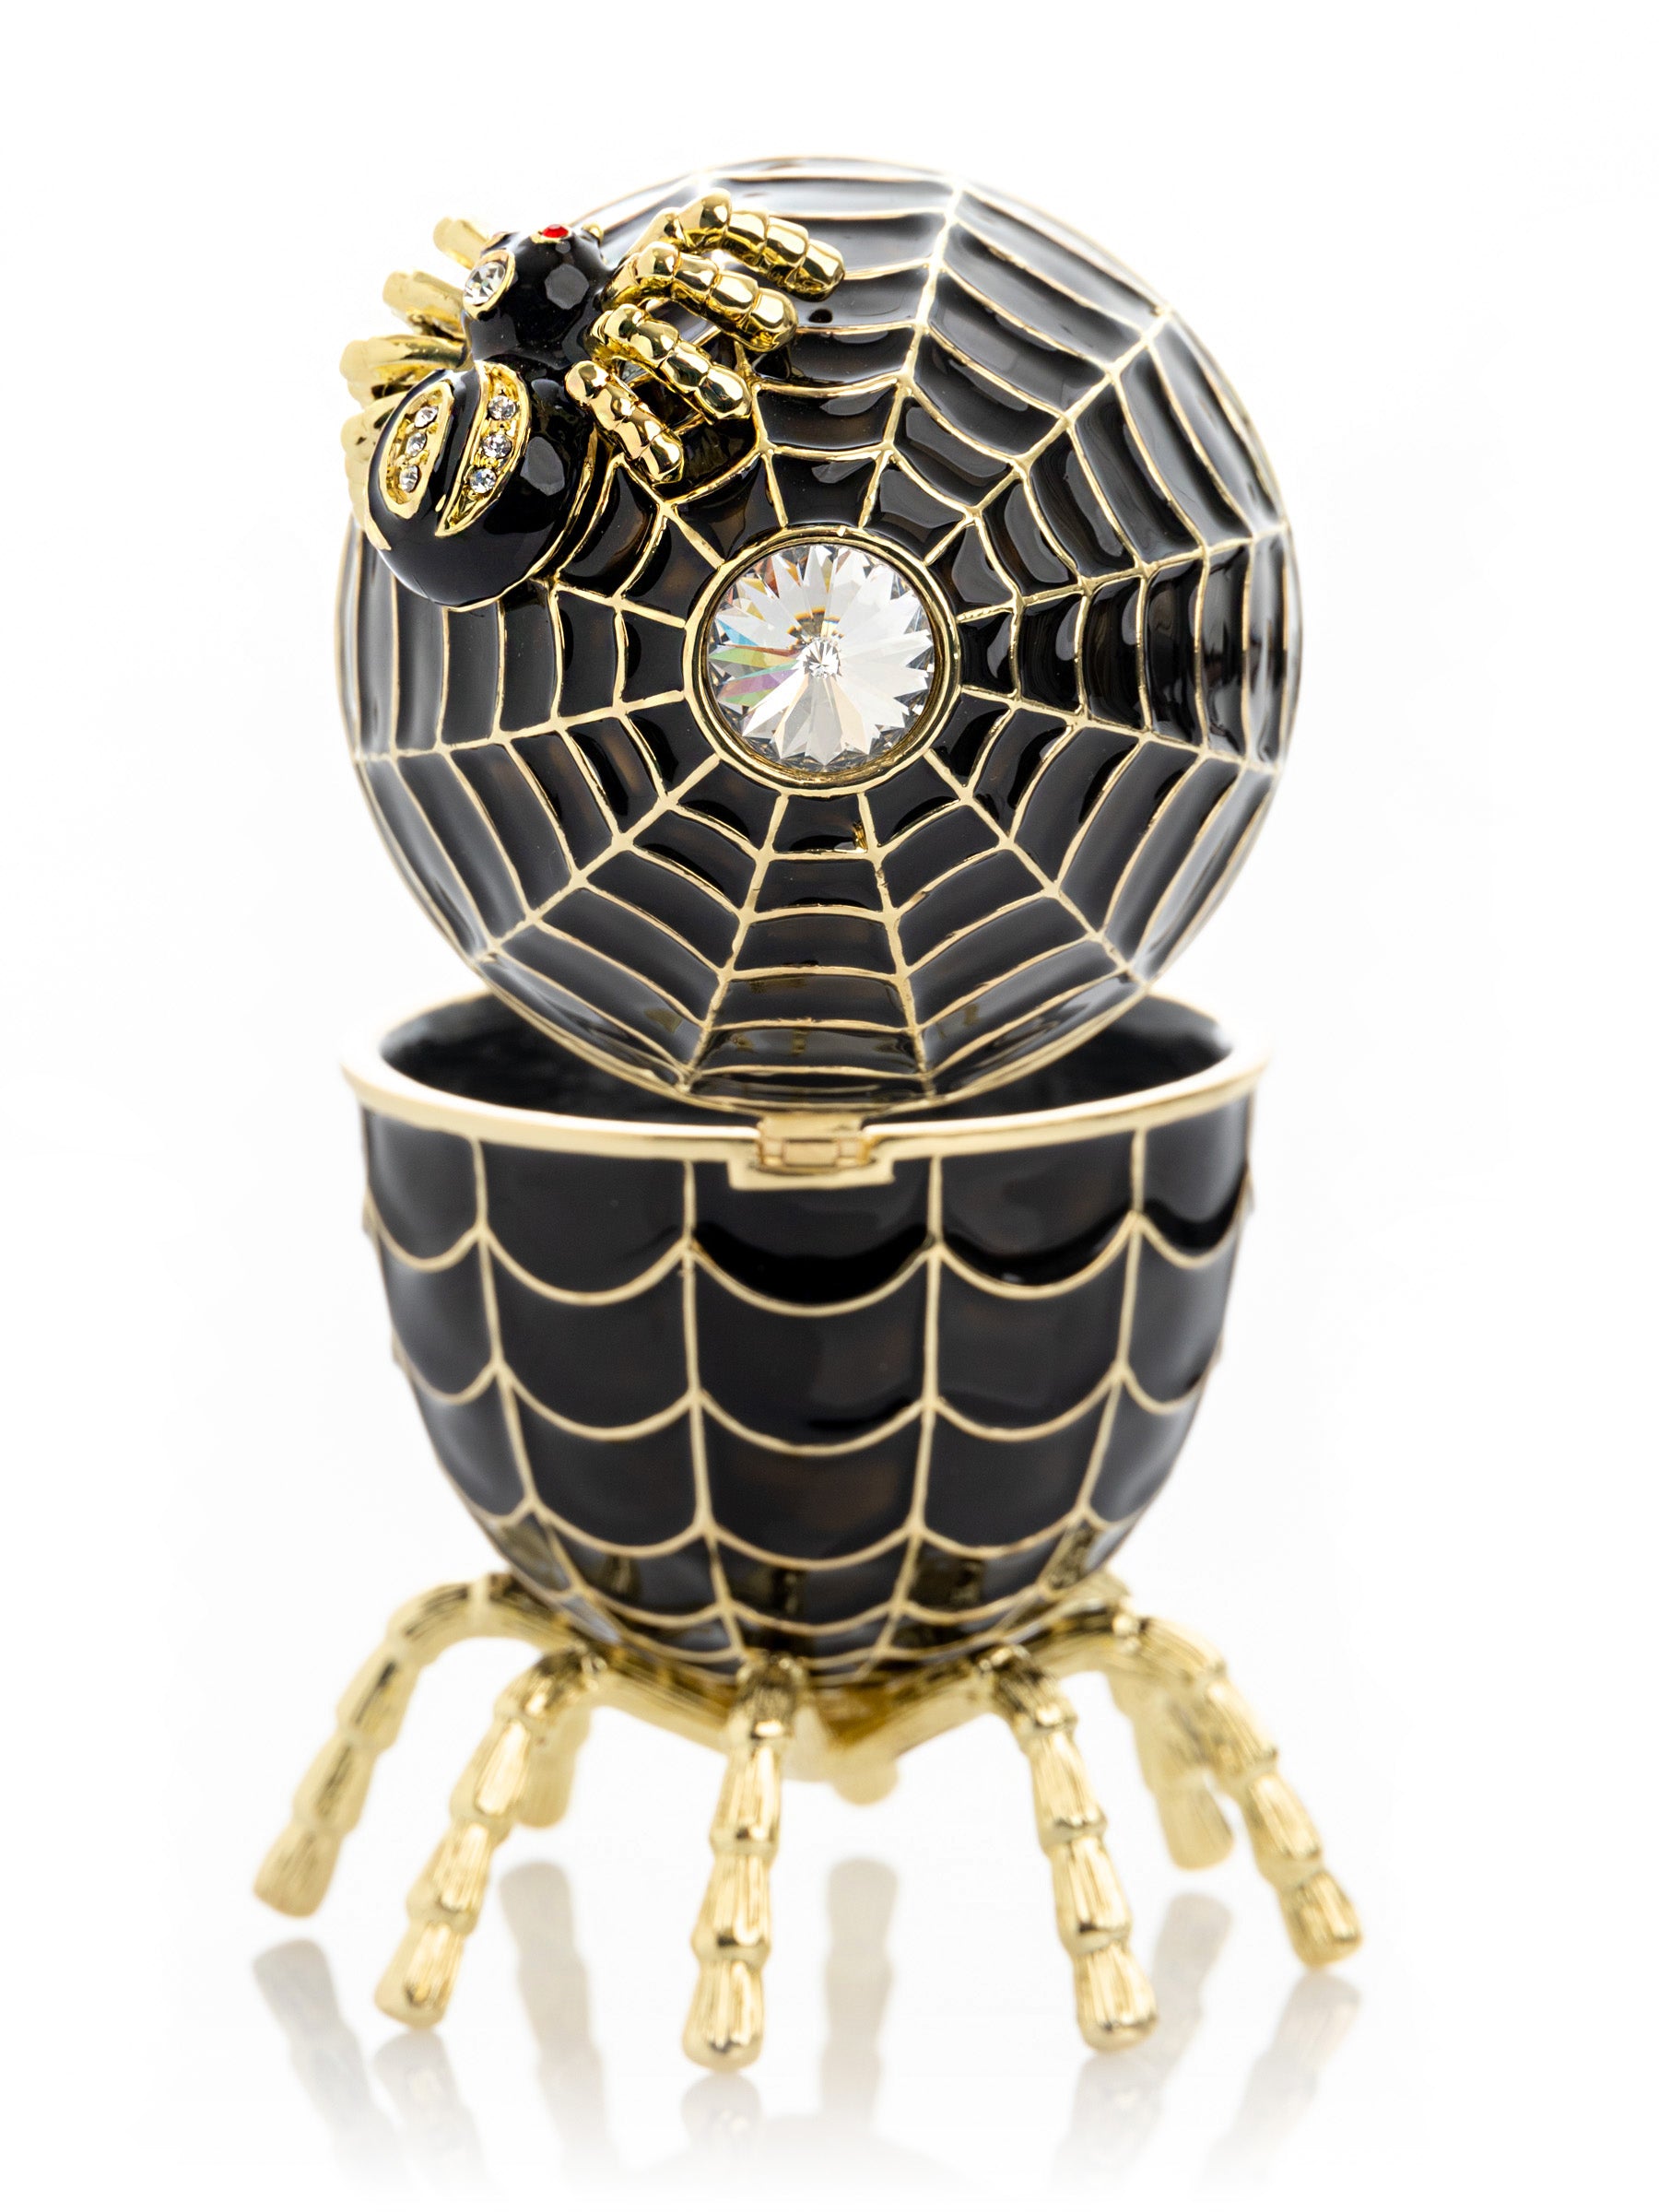 Schwarzes Faberge-Ei, Spinnennetz, Dekoration, Musik spielendes Ei